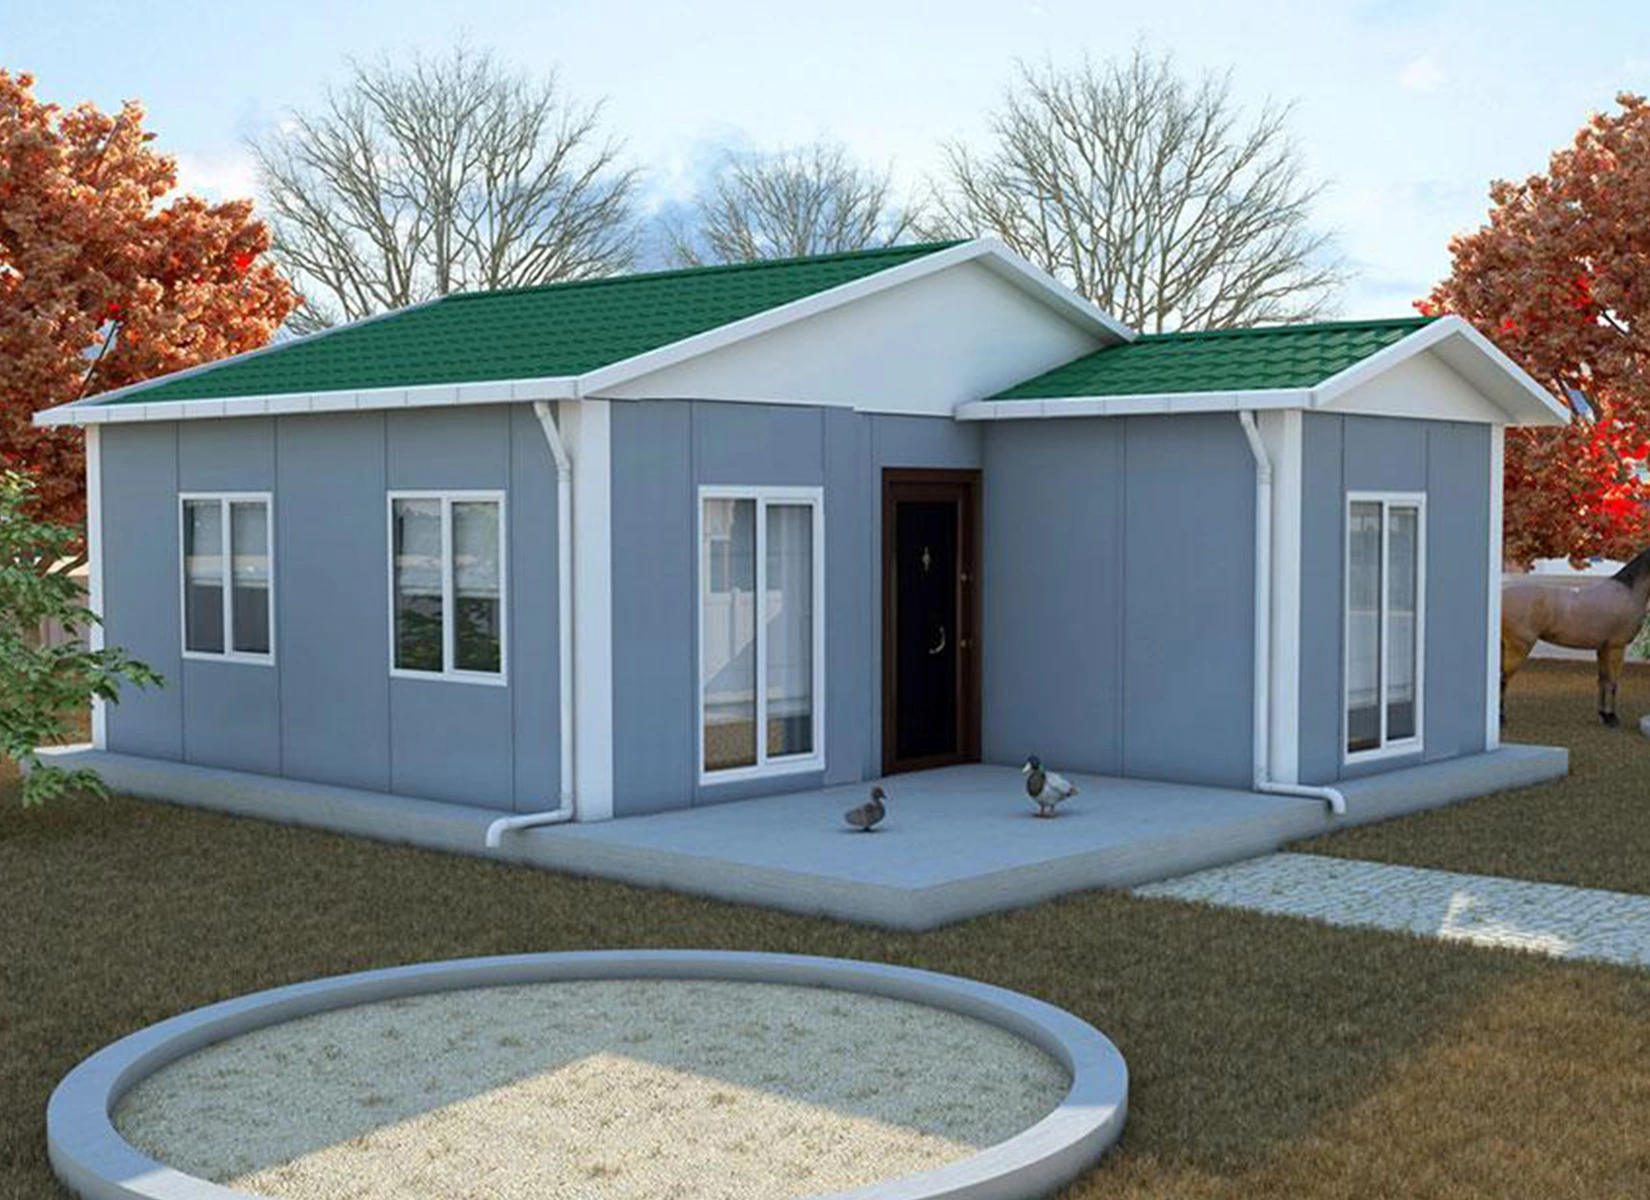 49 m² Tek Katlı Prefabrik Evler dincerler prefabrik ev ve güneş enerji sistemleri- Edirne-Keşan